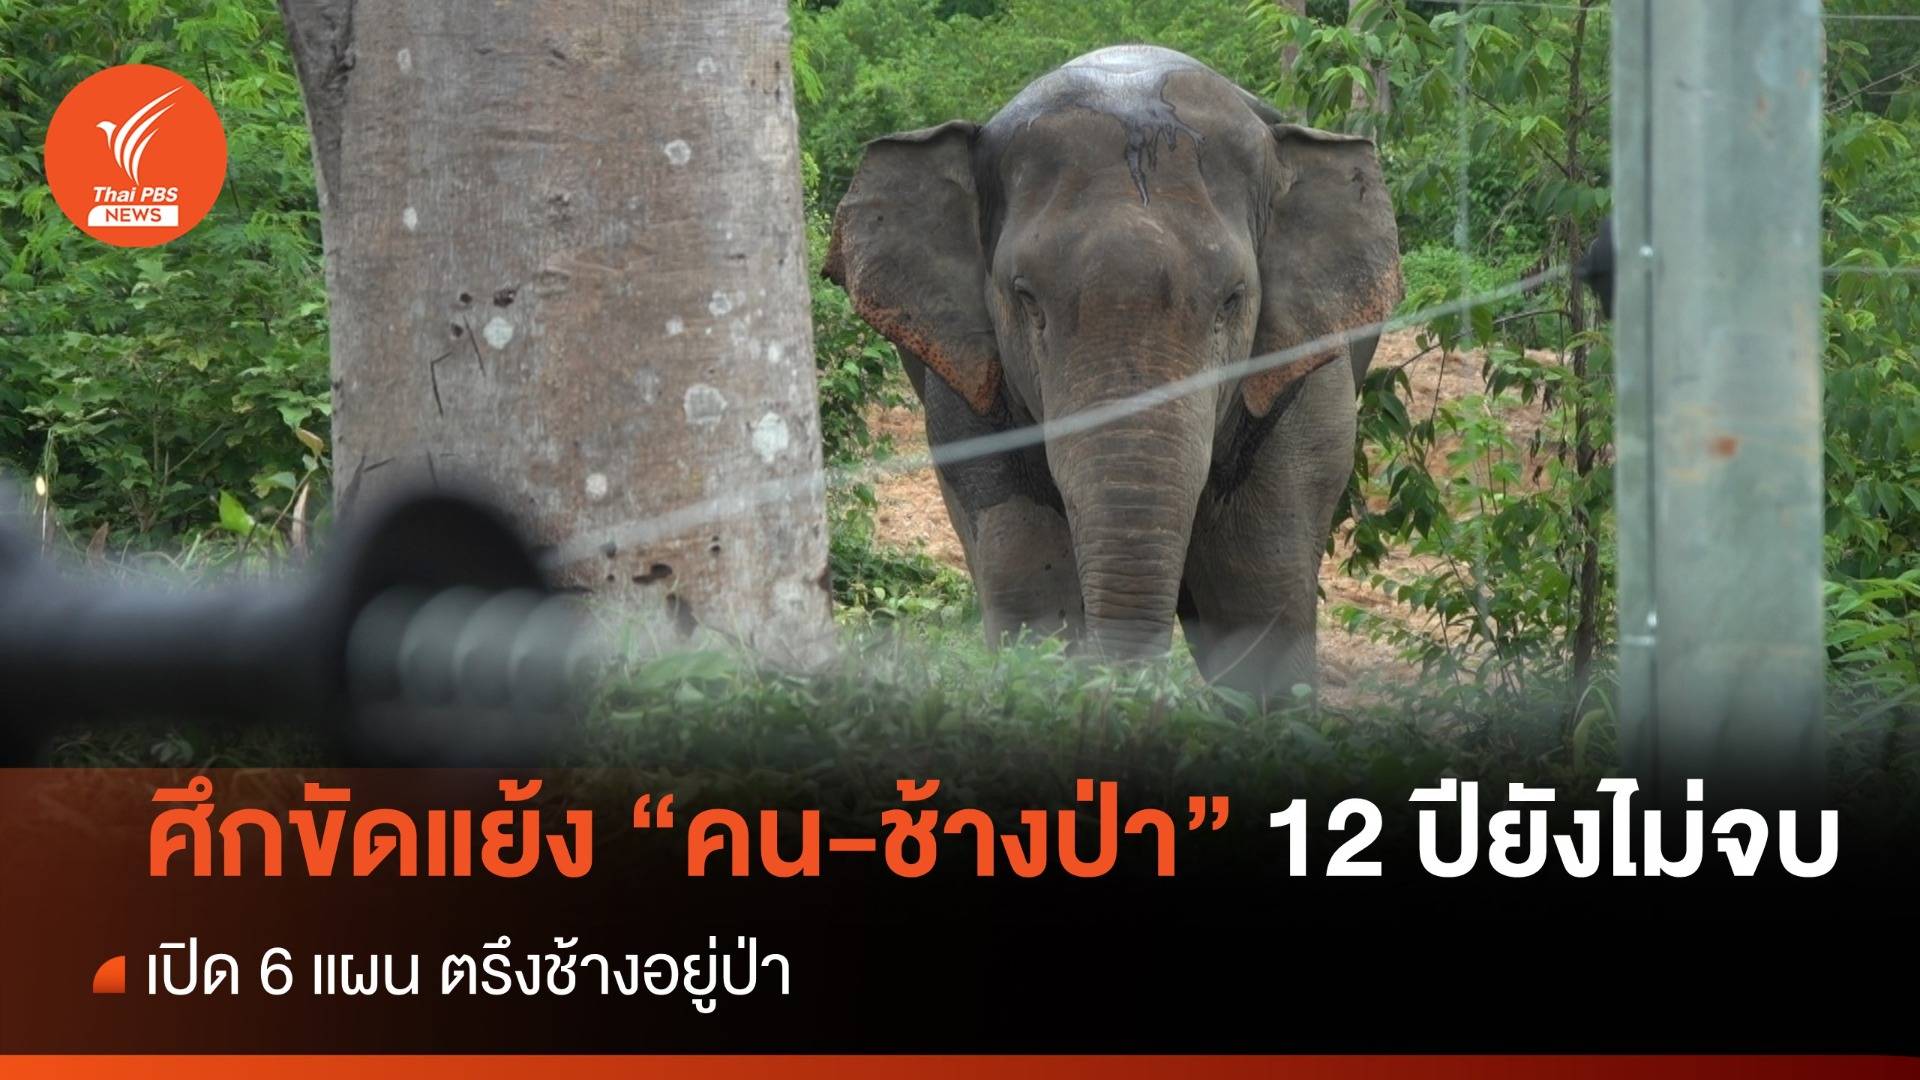 ศึกขัดแย้ง “คน-ช้างป่า” 12 ปียังไม่จบ ระยะทางอีกยาวไกล